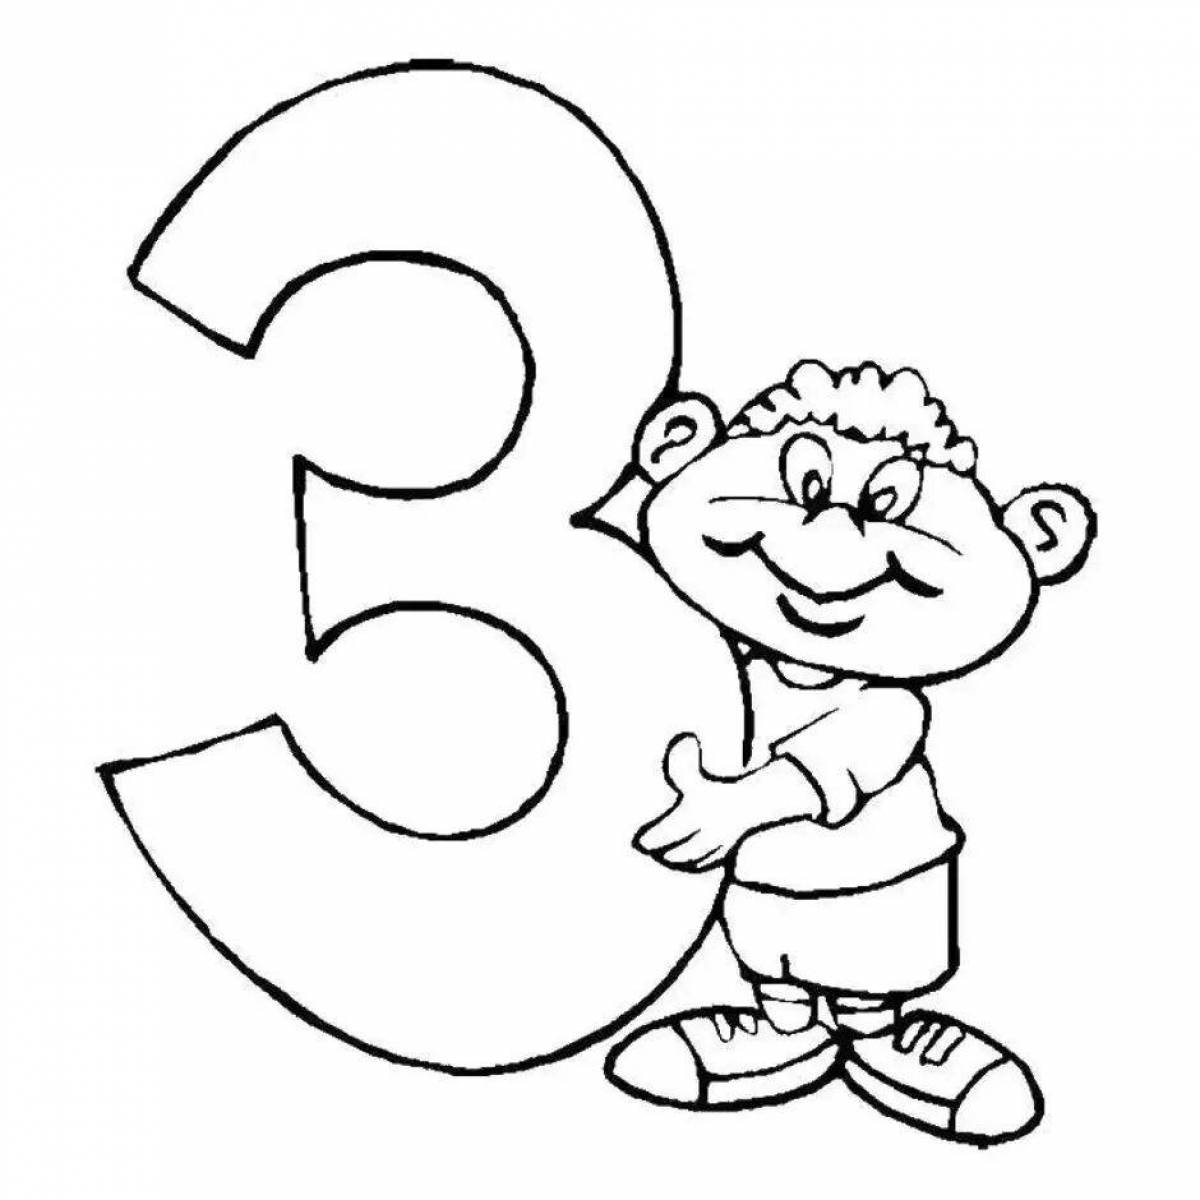 Буква з для детей #31